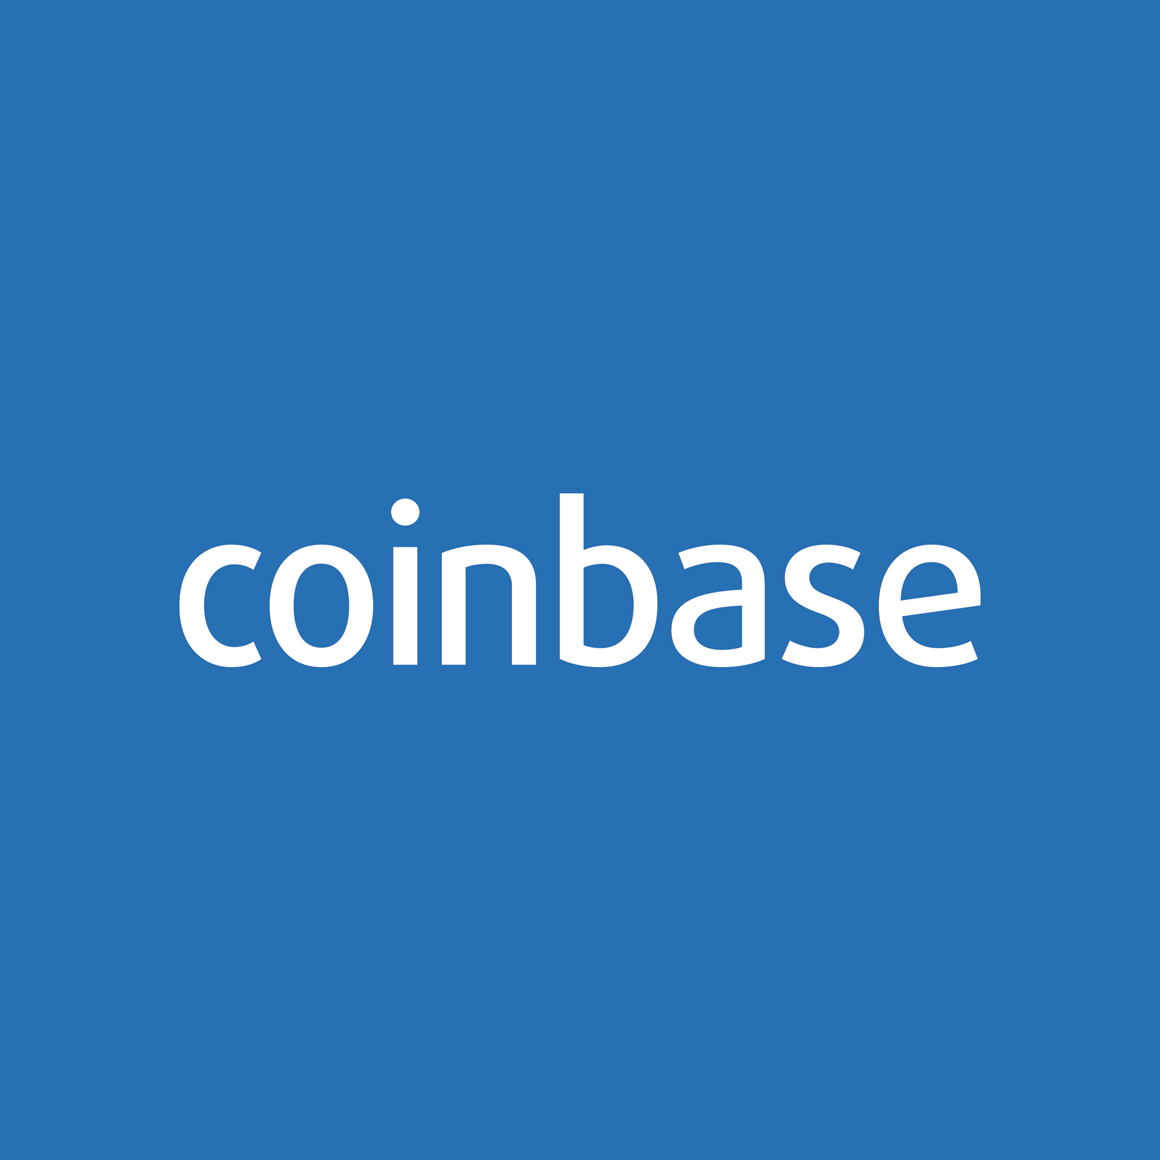 coinbase.png